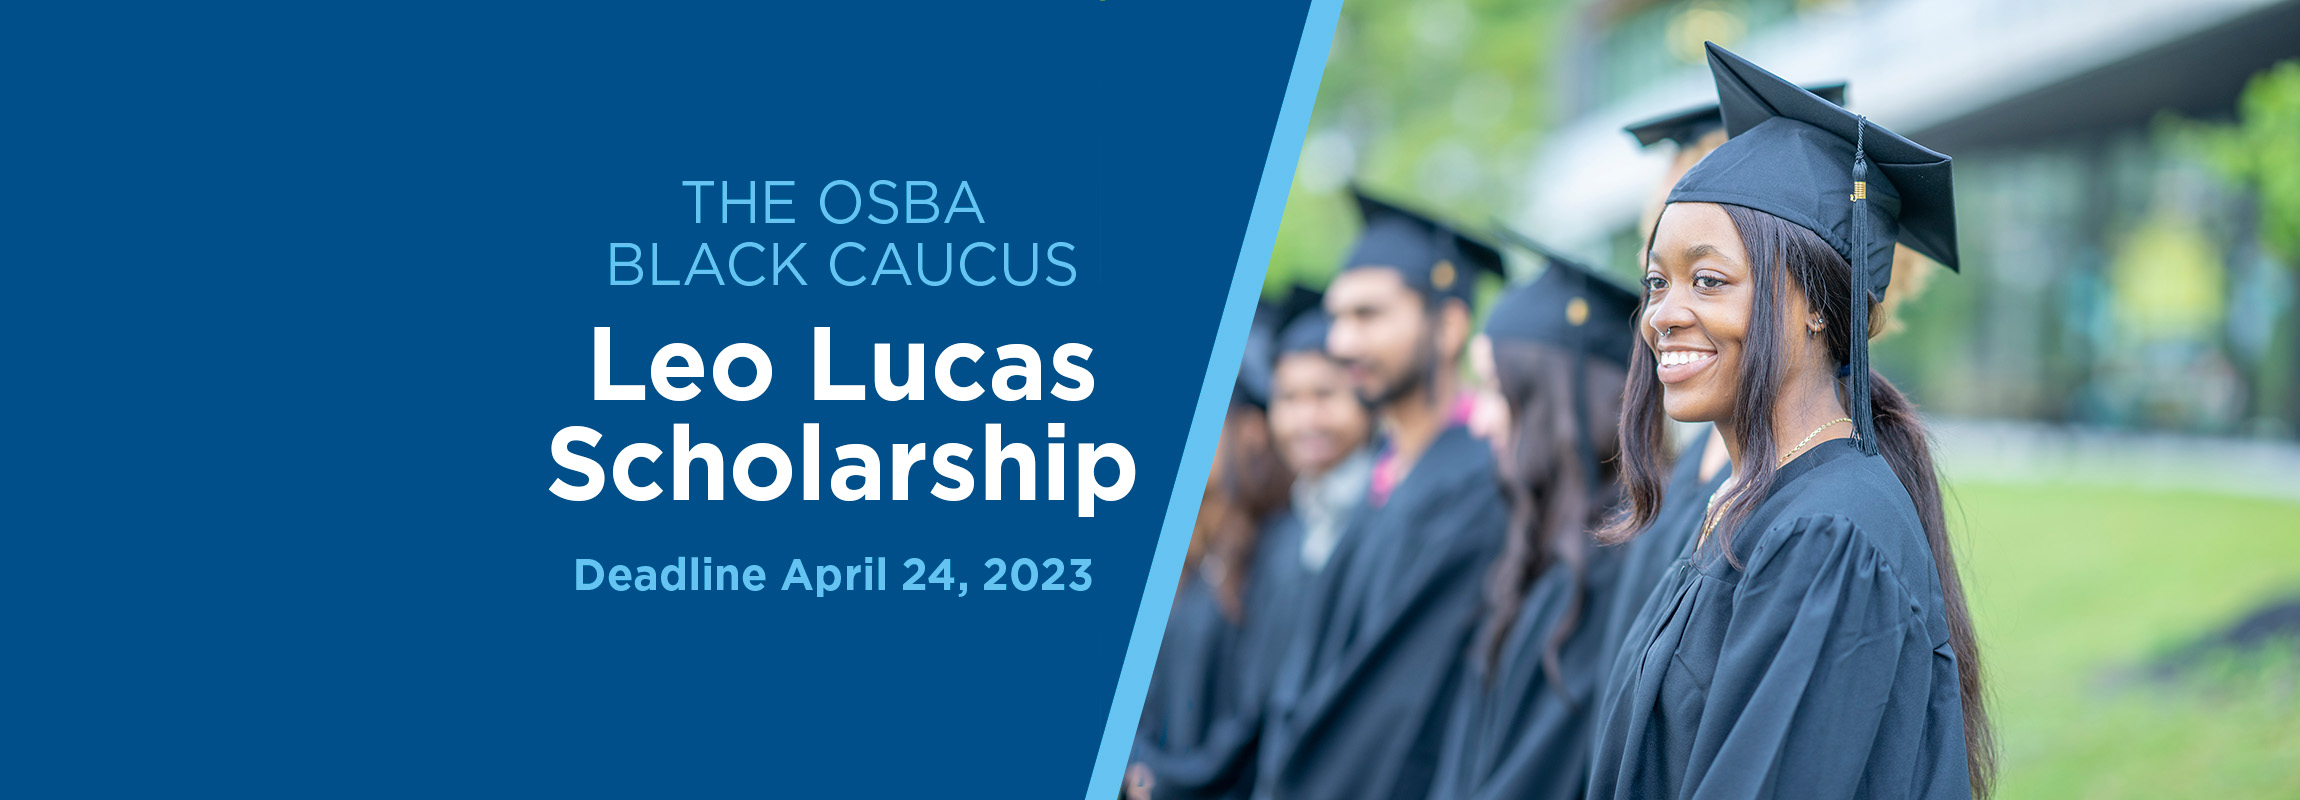 Leo Lucas Scholarship applications due April 24